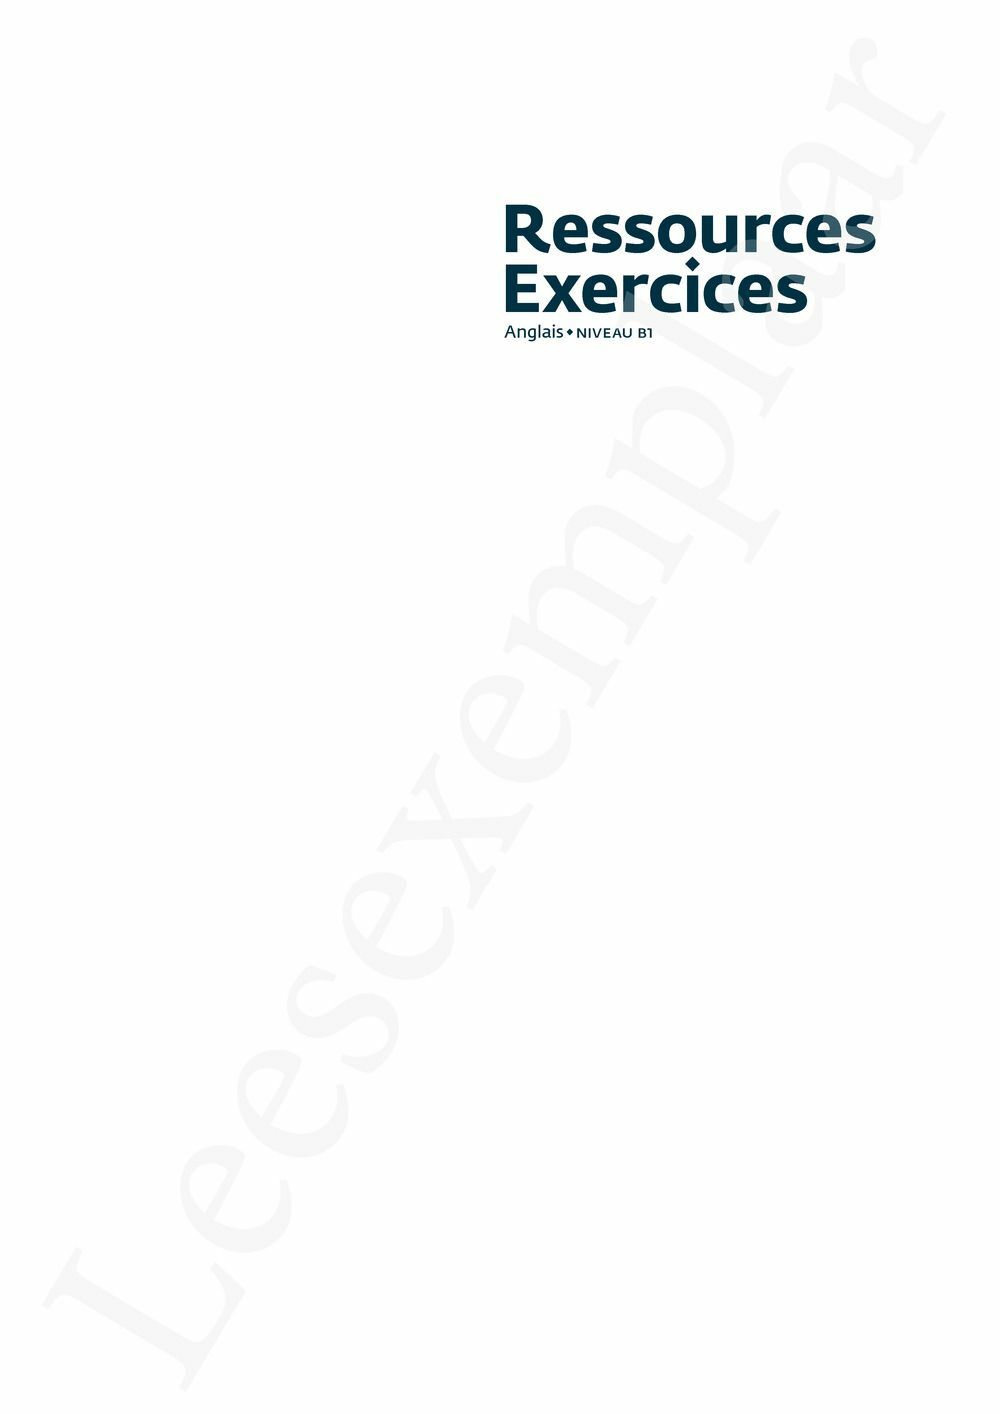 Preview: Ressources exercices – Anglais (Pelckmans Portail inclus)